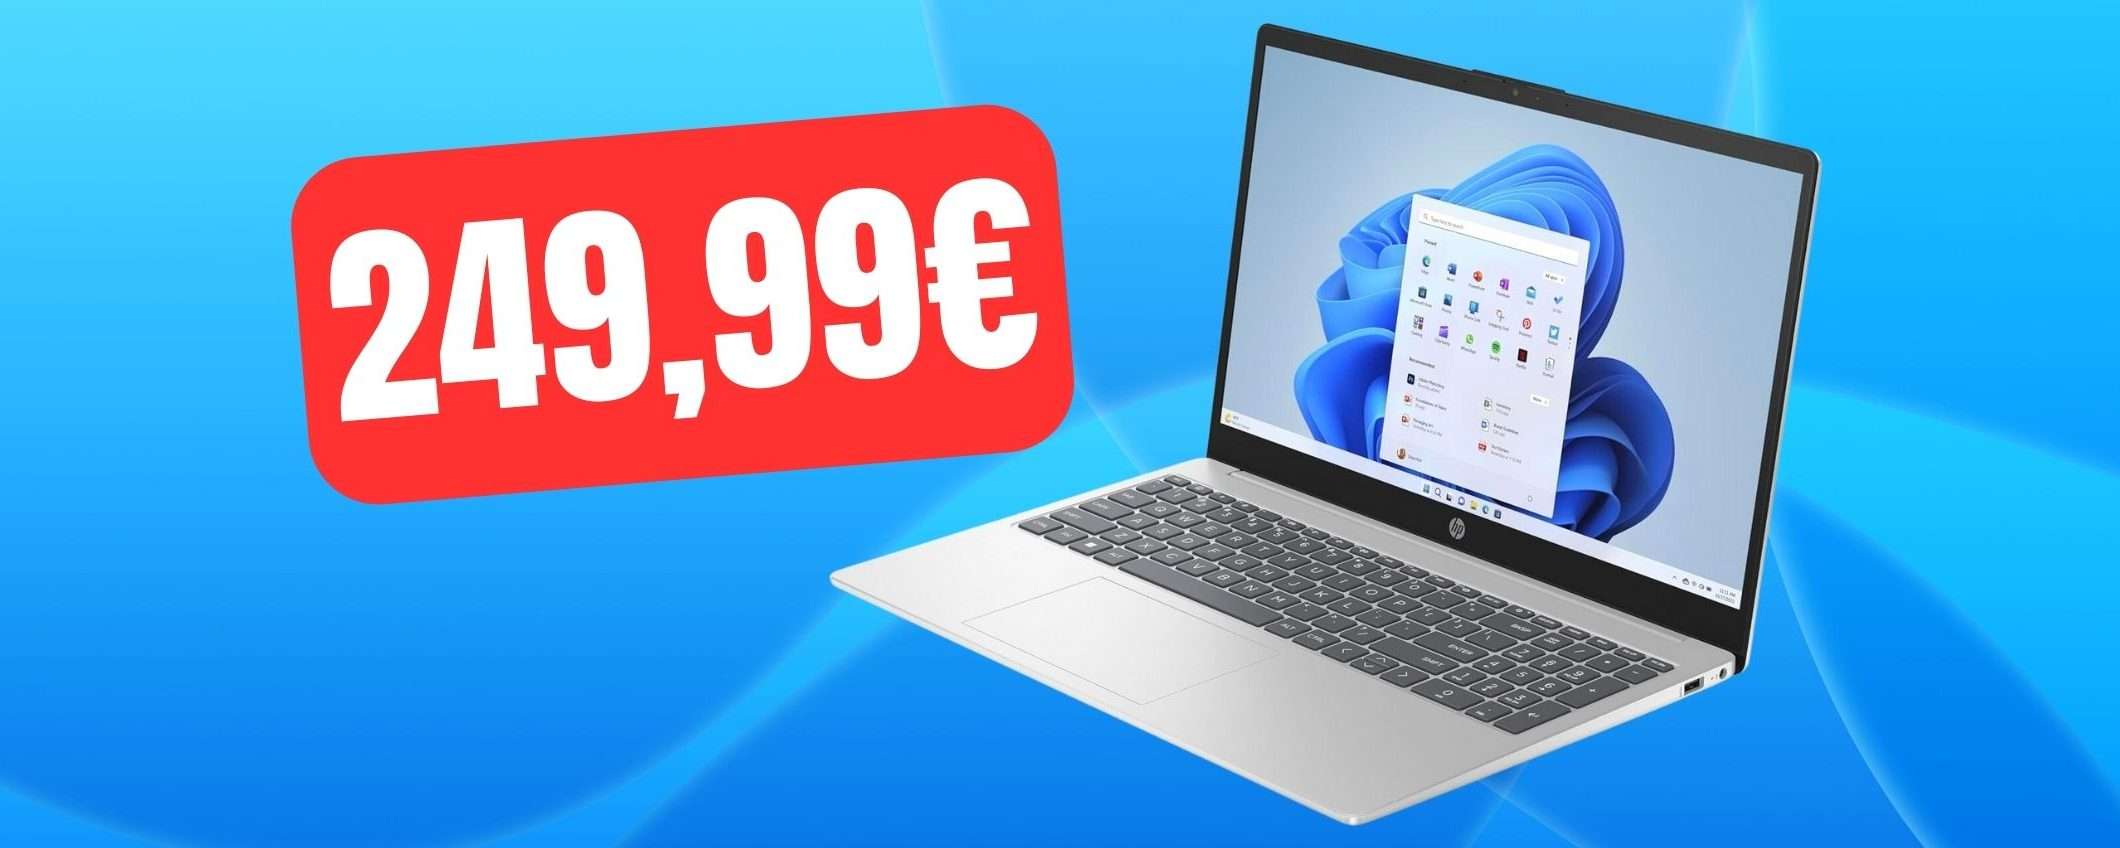 Notebook HP in SUPER SCONTO: ti bastano 249,99€ su Amazon